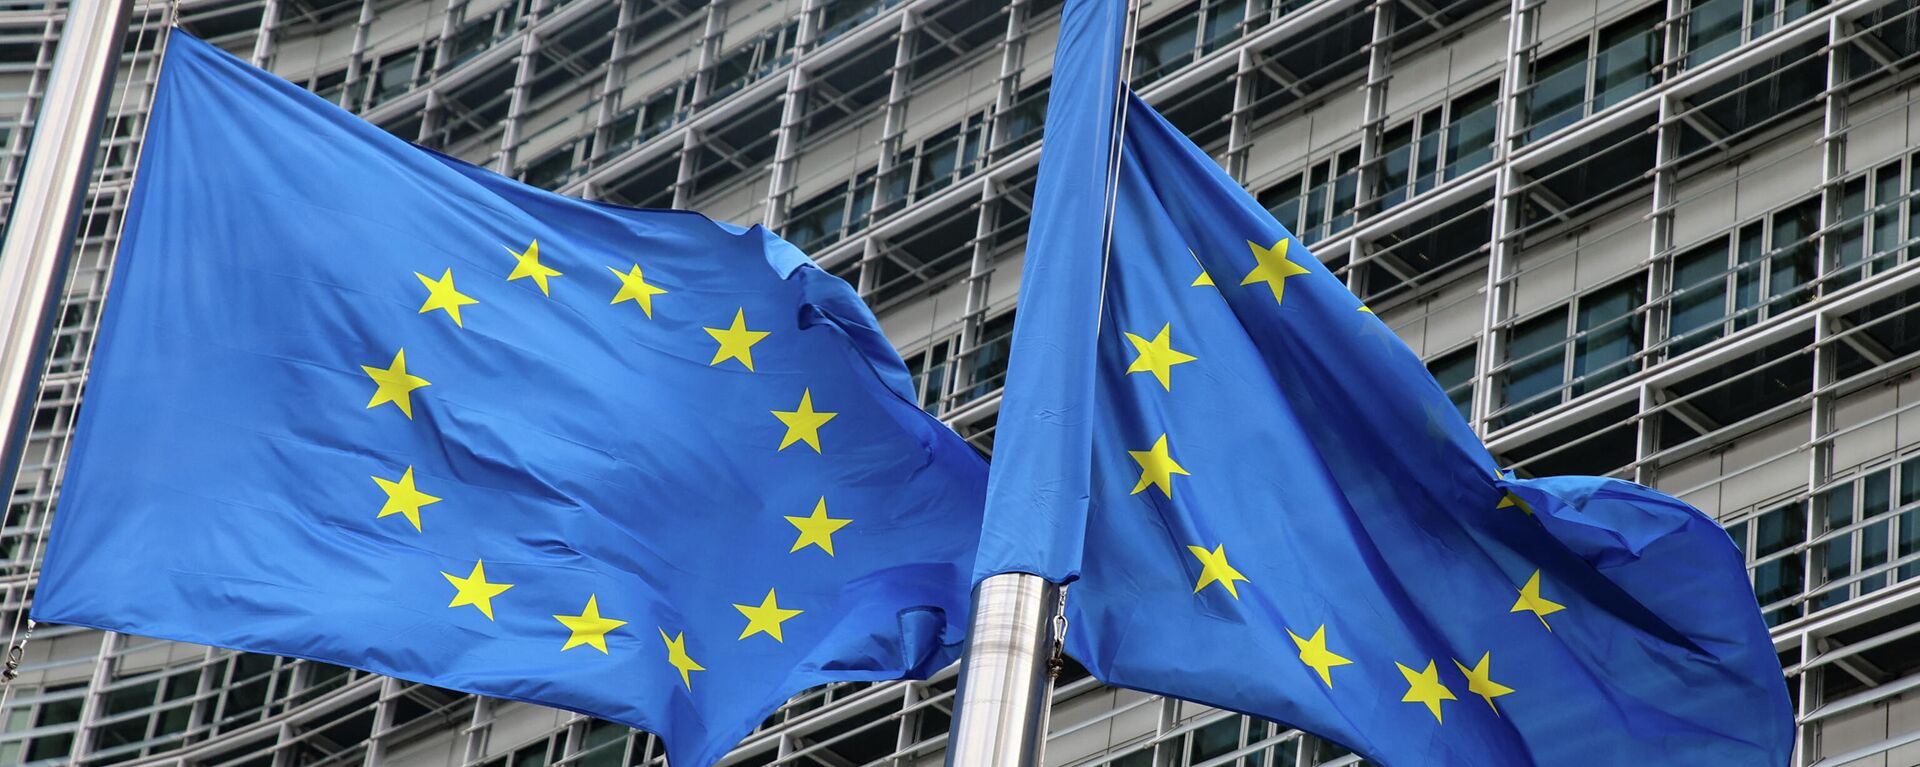 Флаги Европейского союза у штаб-квартиры Европейской комиссии в Брюсселе - Sputnik Латвия, 1920, 27.12.2021